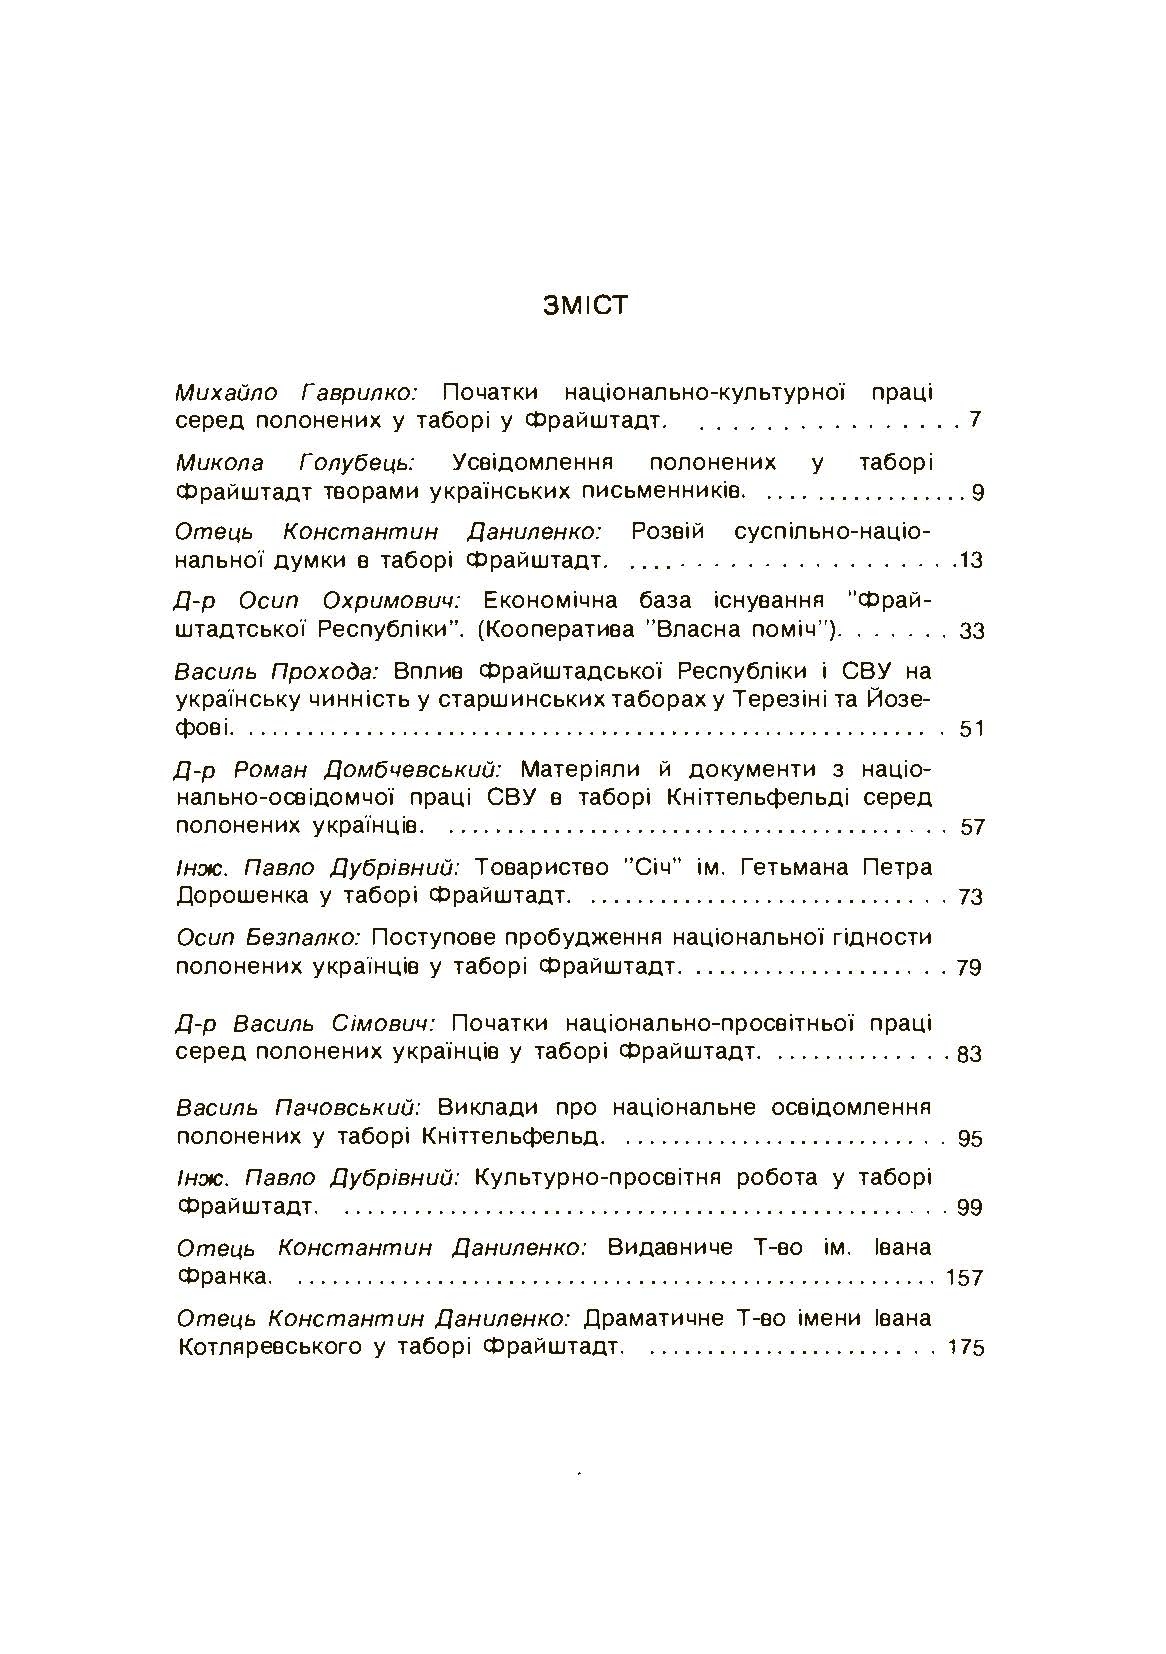 Союз визволення України: 1914-1918. Відень. Автор — Колектив авторів. 